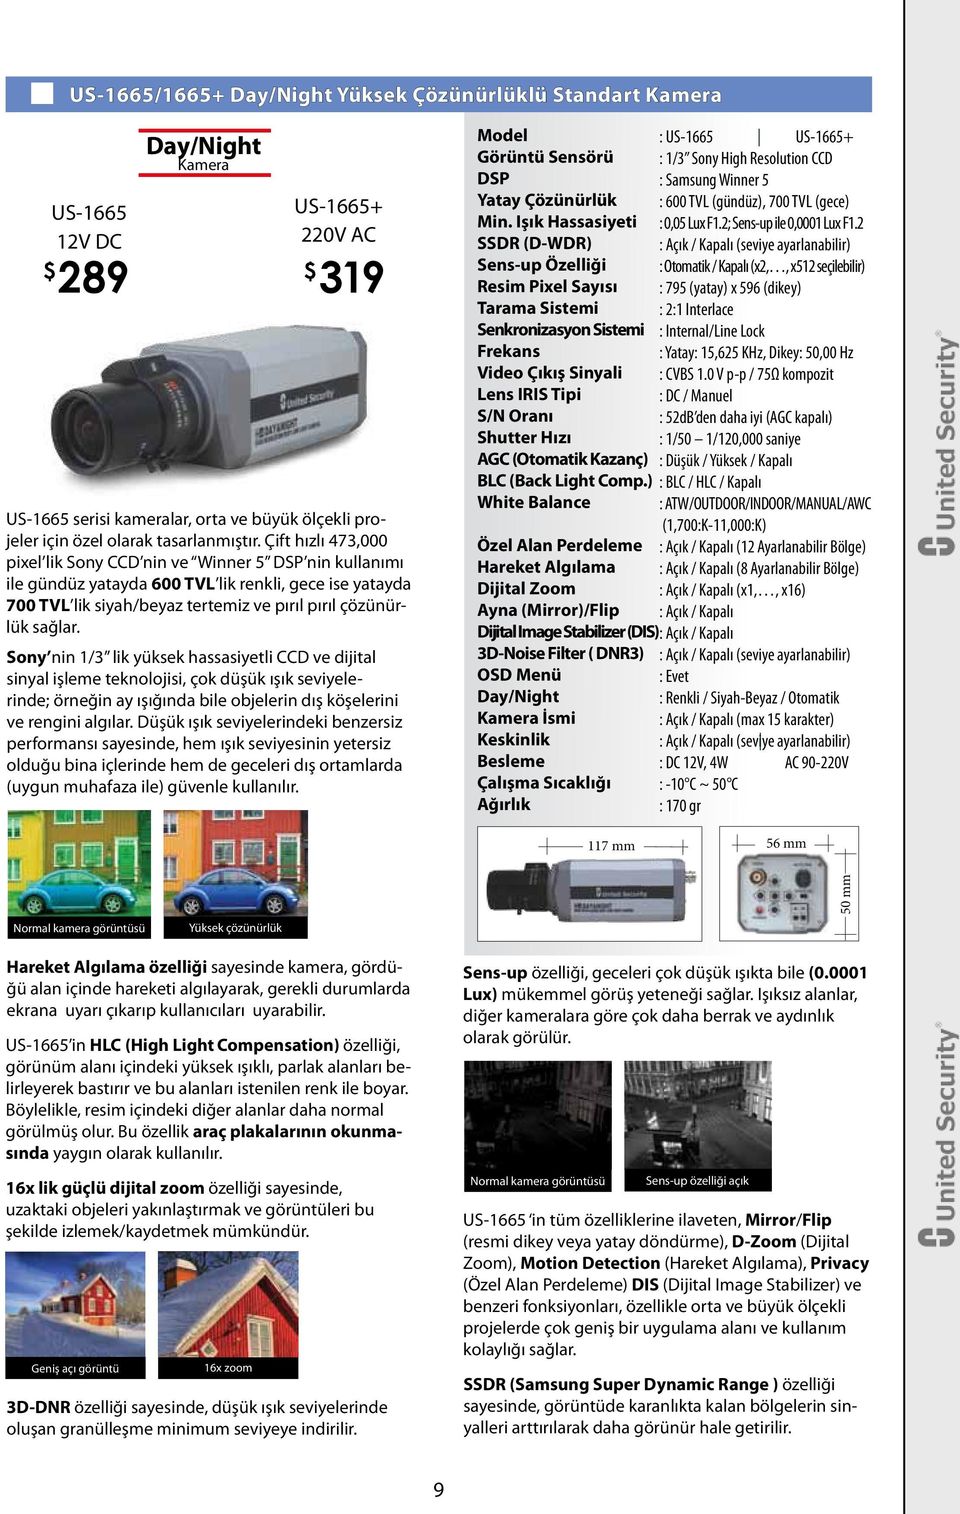 Çift hızlı 473,000 pixel lik Sony CCD nin ve Winner 5 DSP nin kullanımı ile gündüz yatayda 600 TVL lik renkli, gece ise yatayda 700 TVL lik siyah/beyaz tertemiz ve pırıl pırıl çözünürlük sağlar.